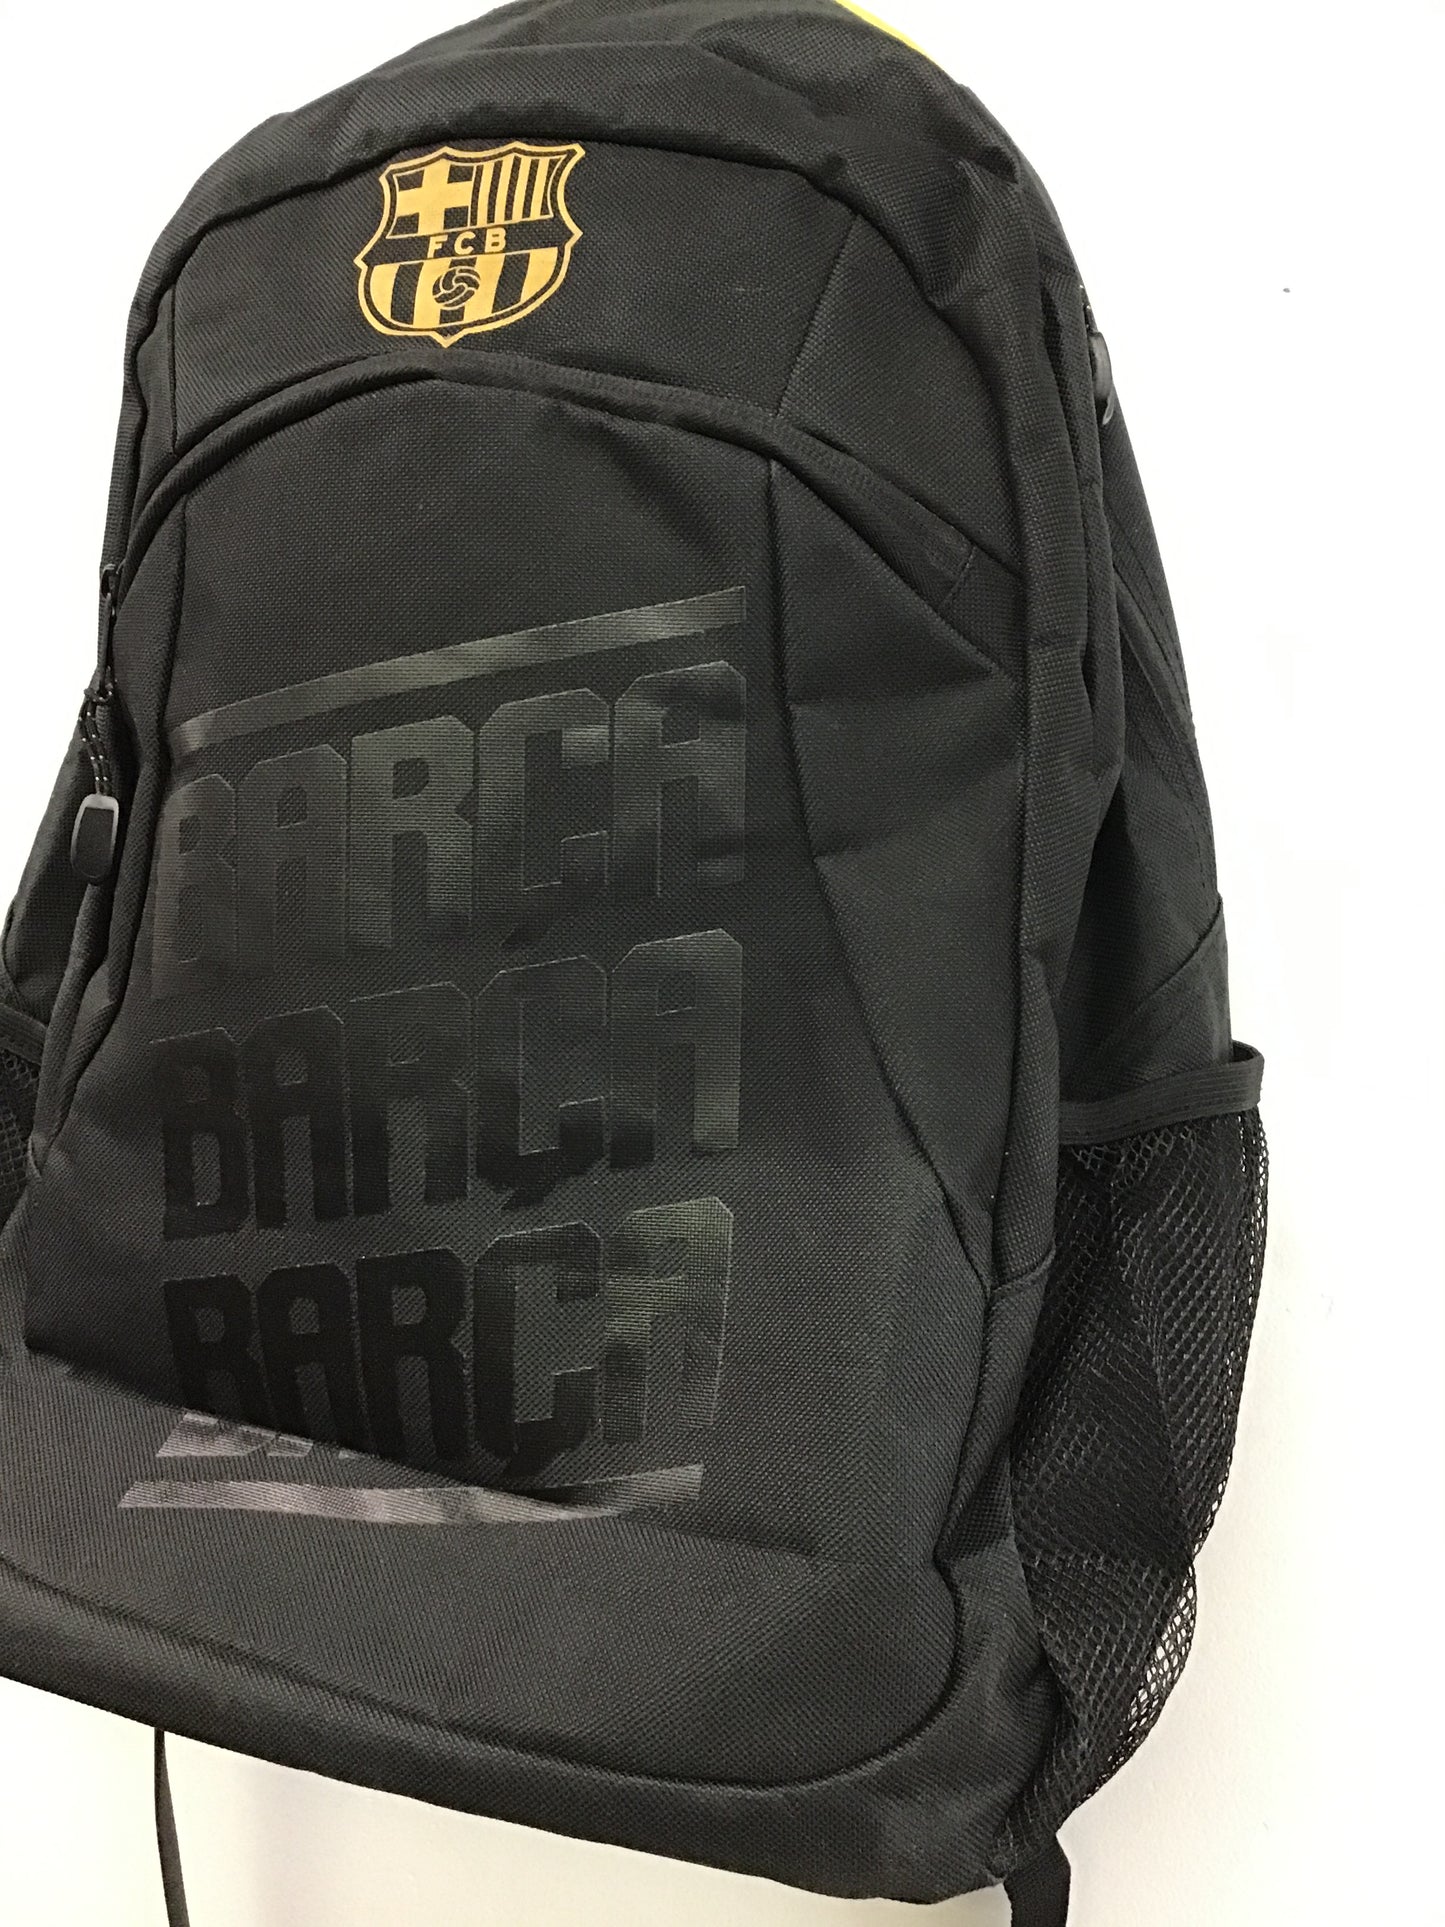 FCB Barca Black Backpack